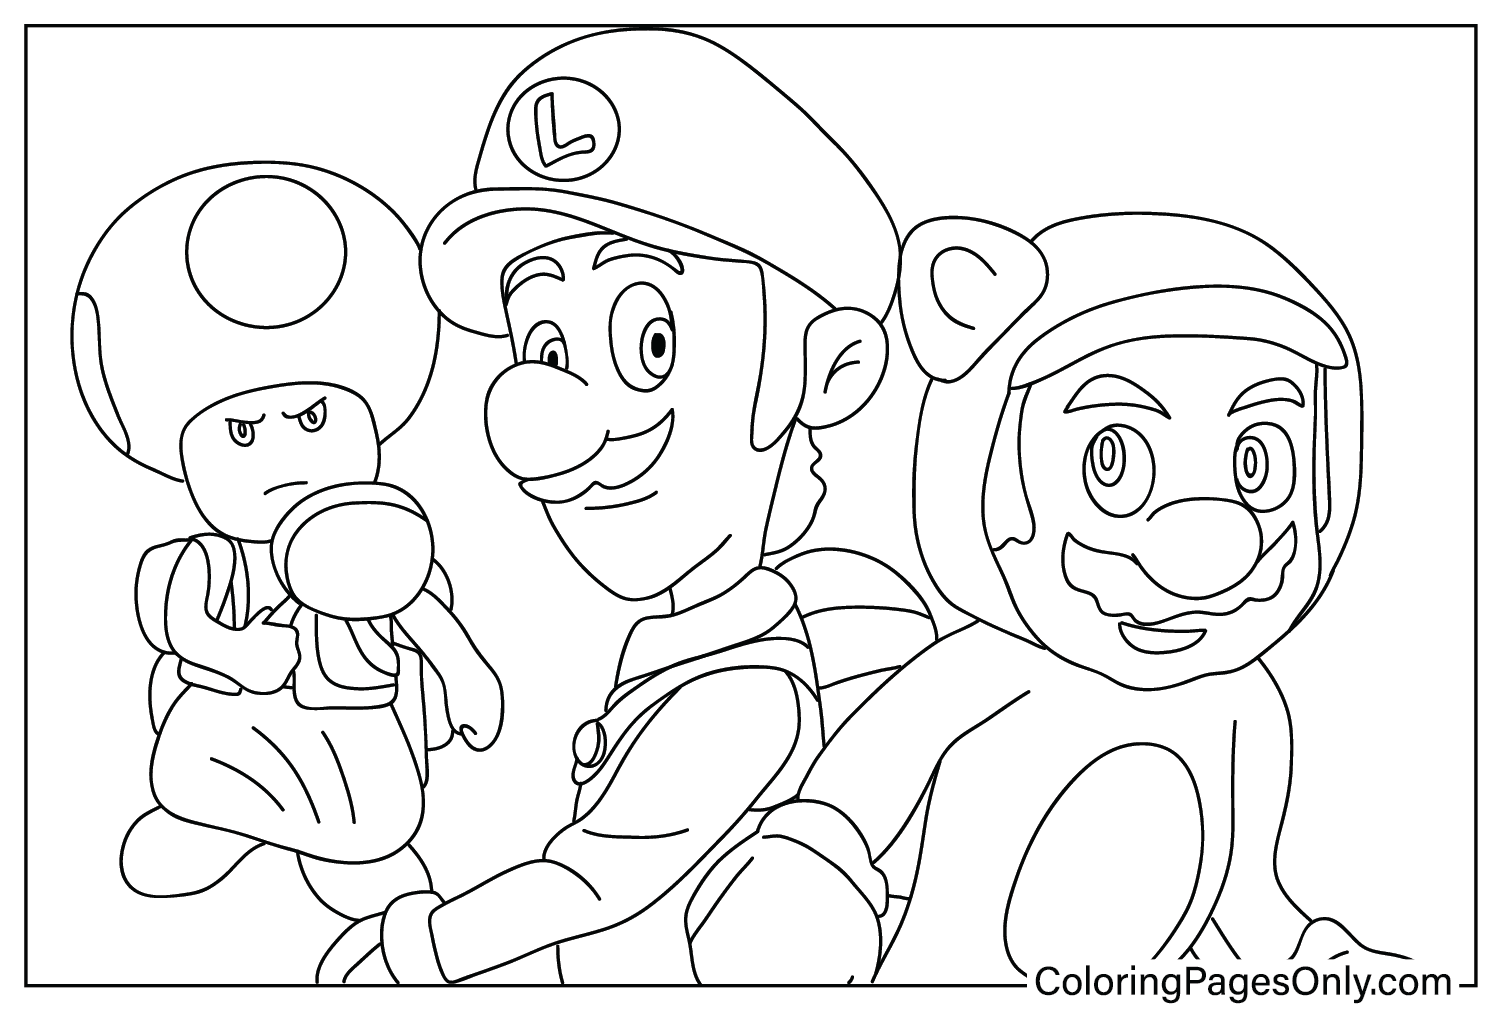 Раскраска Марио, Луиджи и Жаба из фильма Super Mario Bros.